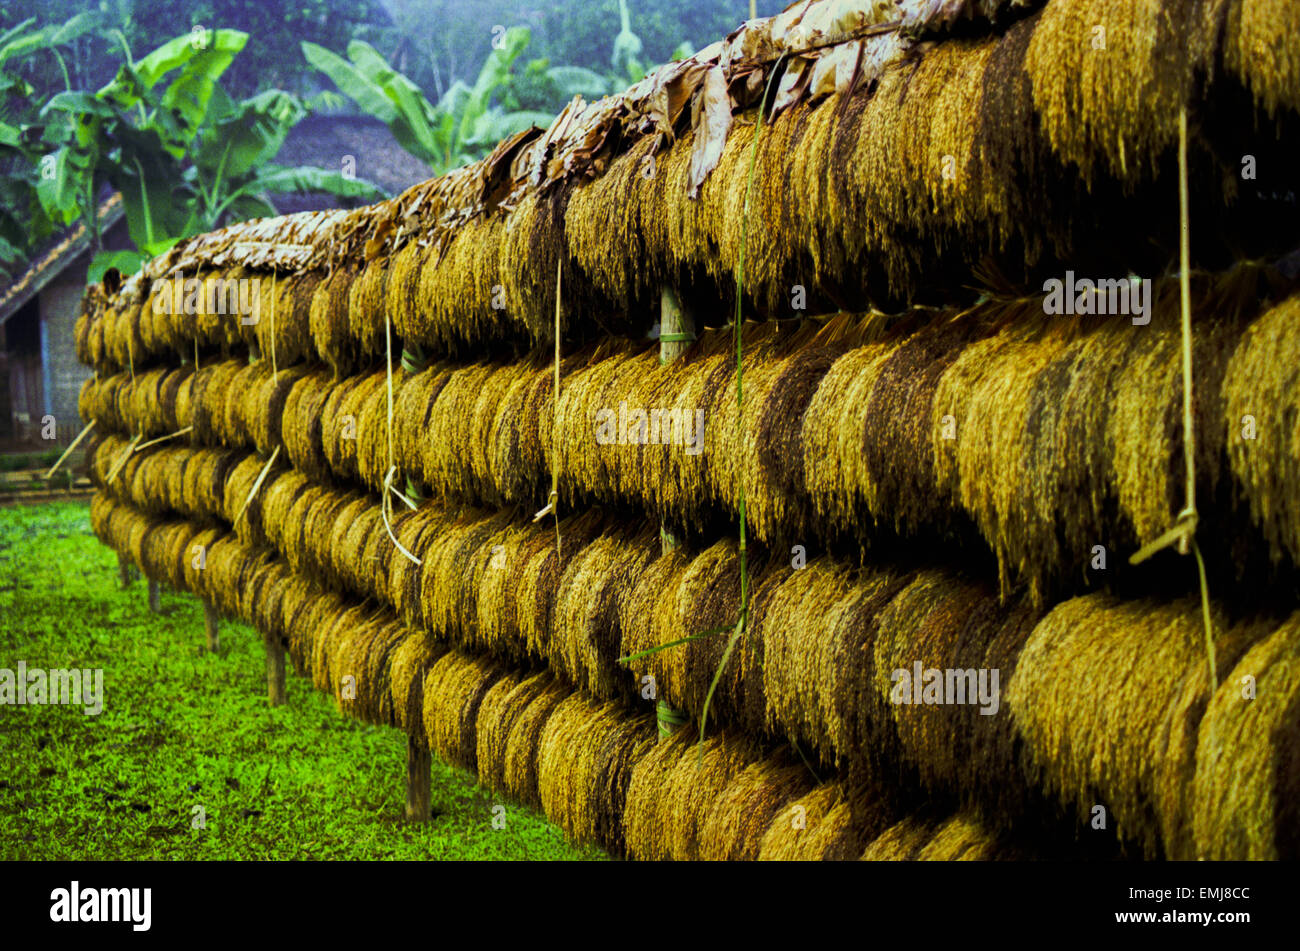 Im traditionellen Dorf Ciptagelar, West-Java, Indonesien, werden während des jährlichen Erntedanksgiving Reistropfen ausgestellt. Stockfoto